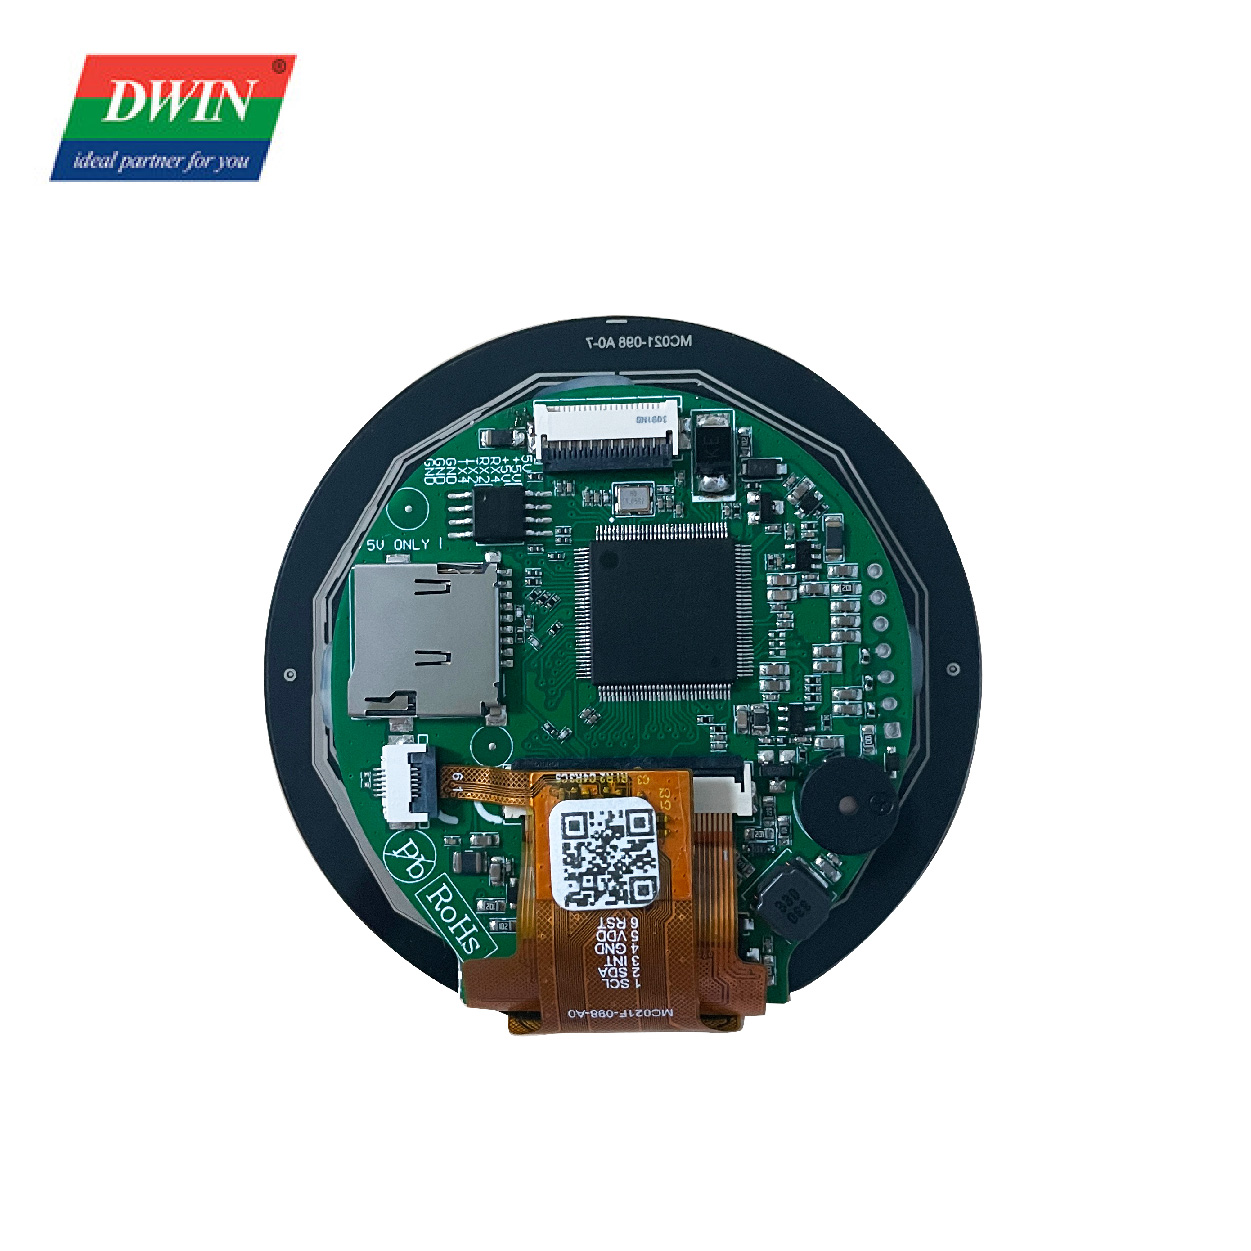 2.1 Modfedd Cylchlythyr Smart LCD DMG48480C021_02W (Gradd Fasnachol)